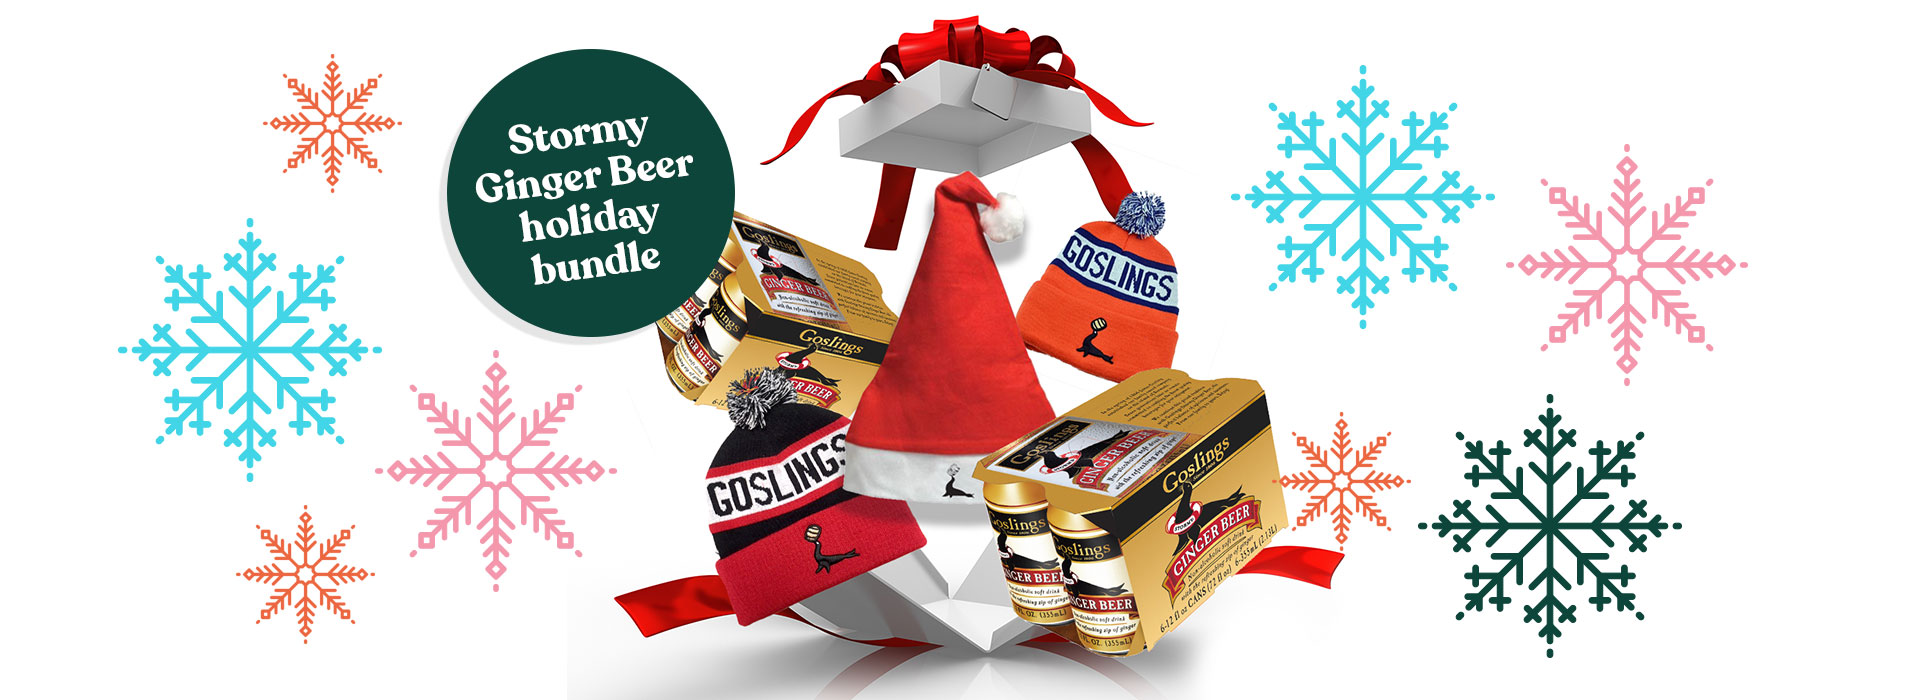 ginger beer holiday bundle